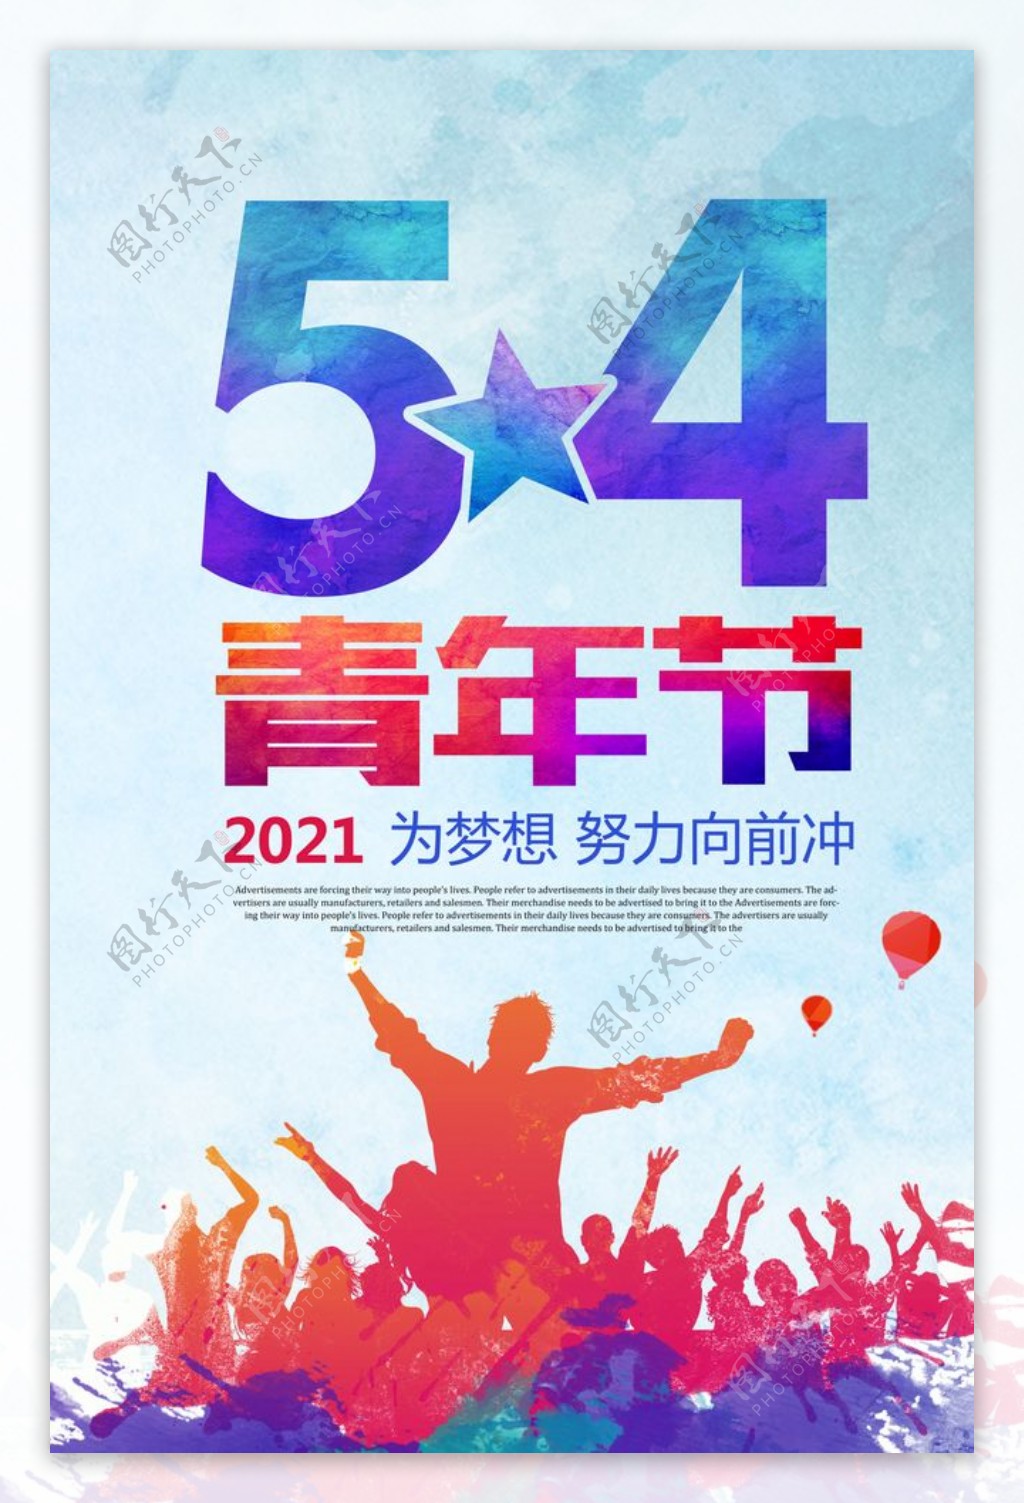 蓝色54青年节海报设计素材图片